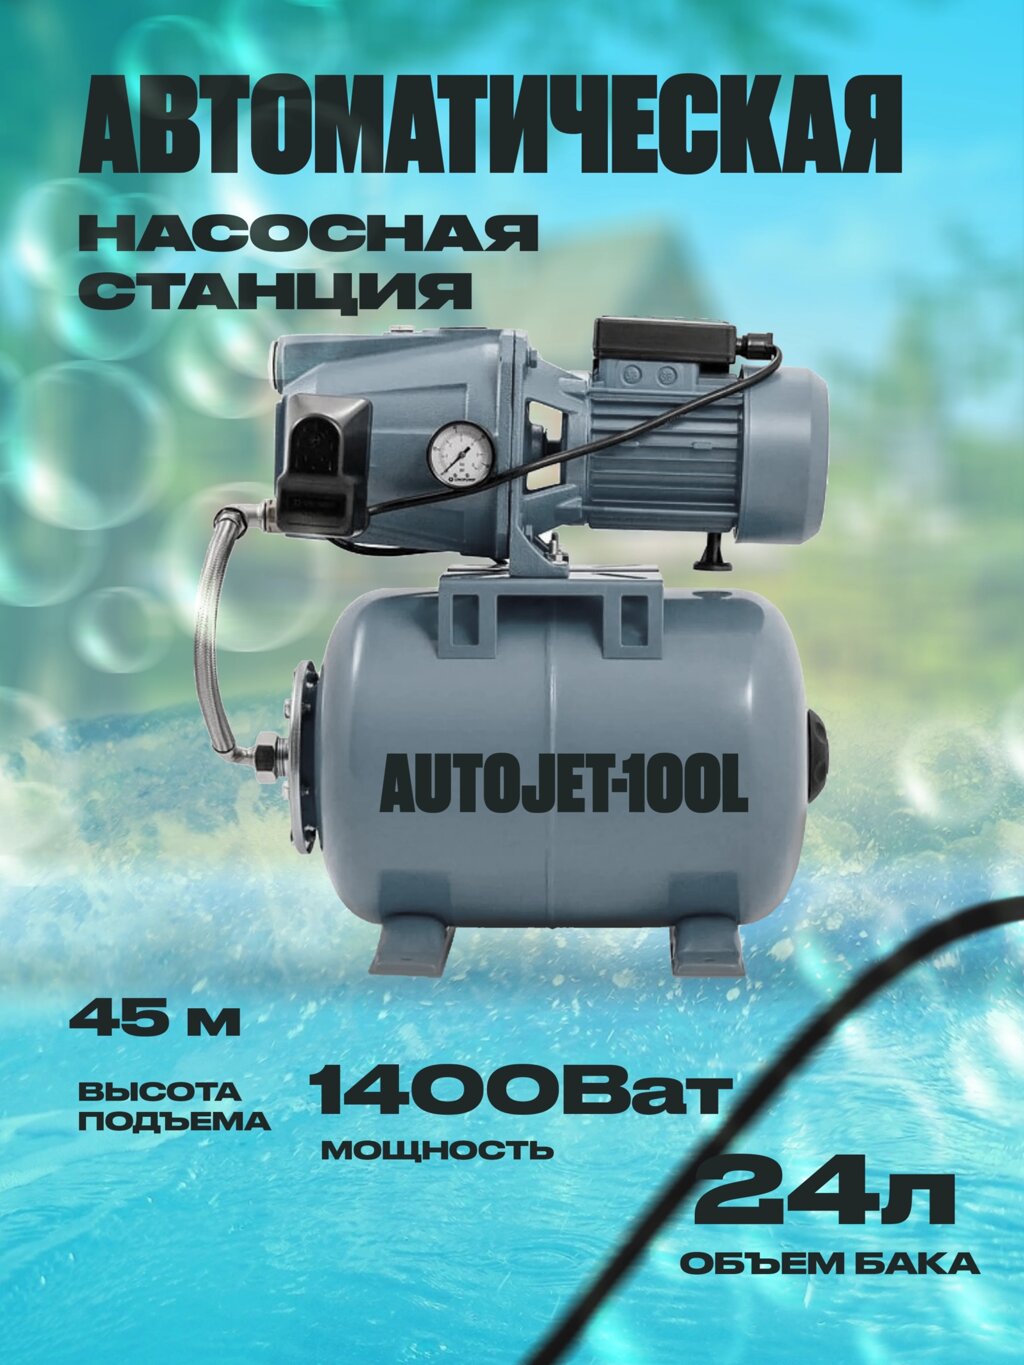 Автоматическая Насосная станция AutoJet-100L мощность 1400Ват от компании Группа Интернет-Магазинов GiX - фото 1